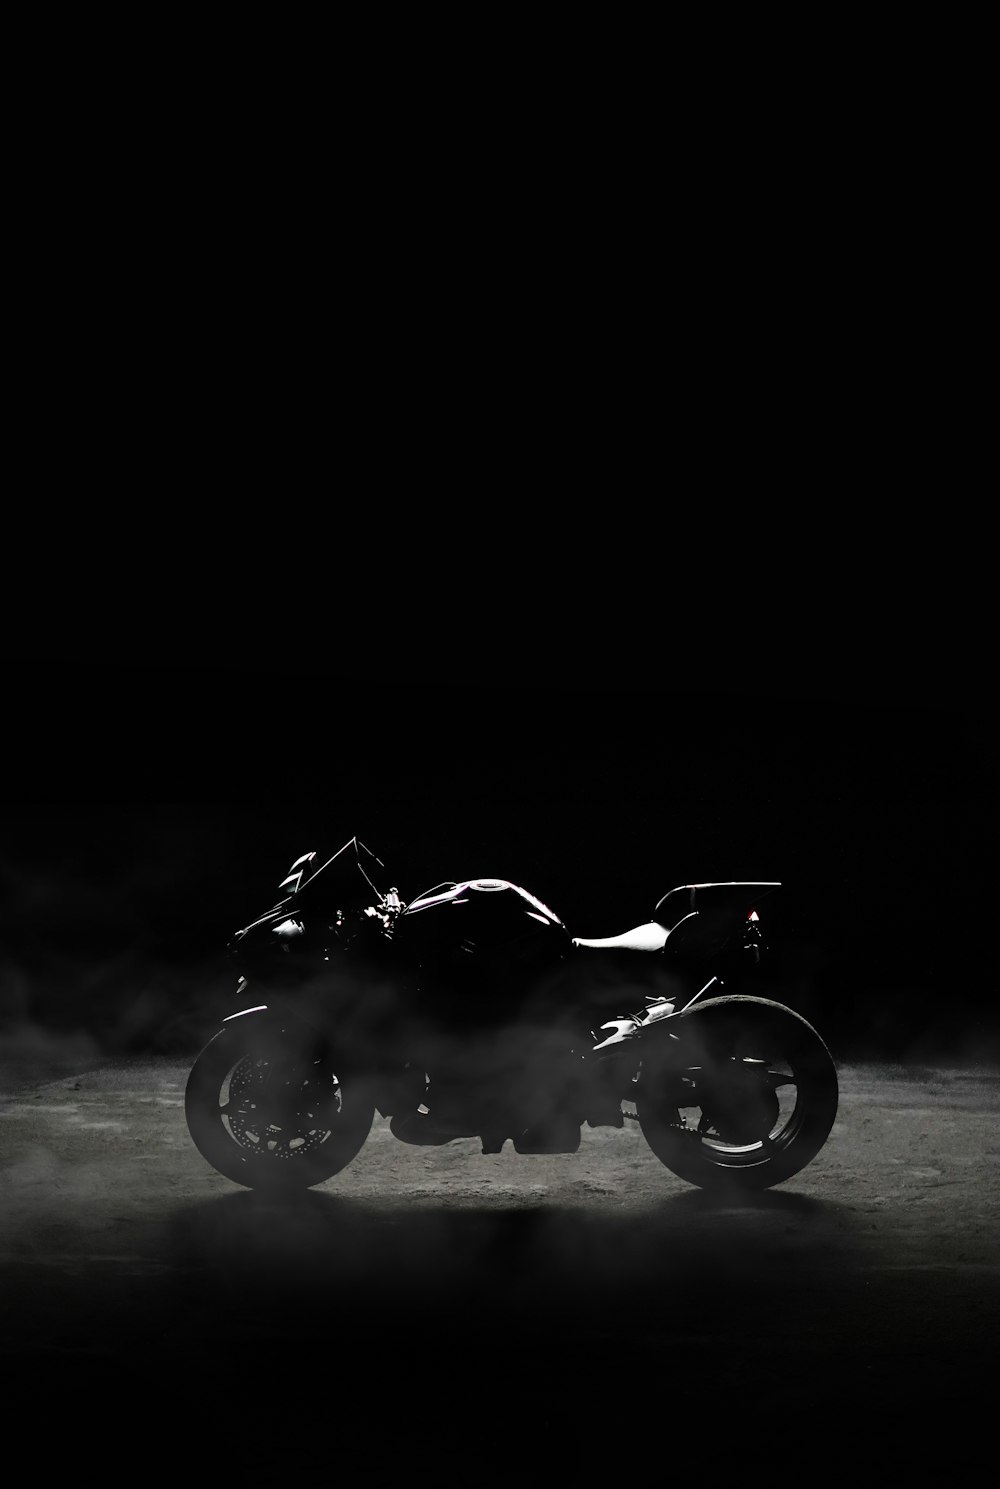 Una foto en blanco y negro de una motocicleta en la oscuridad